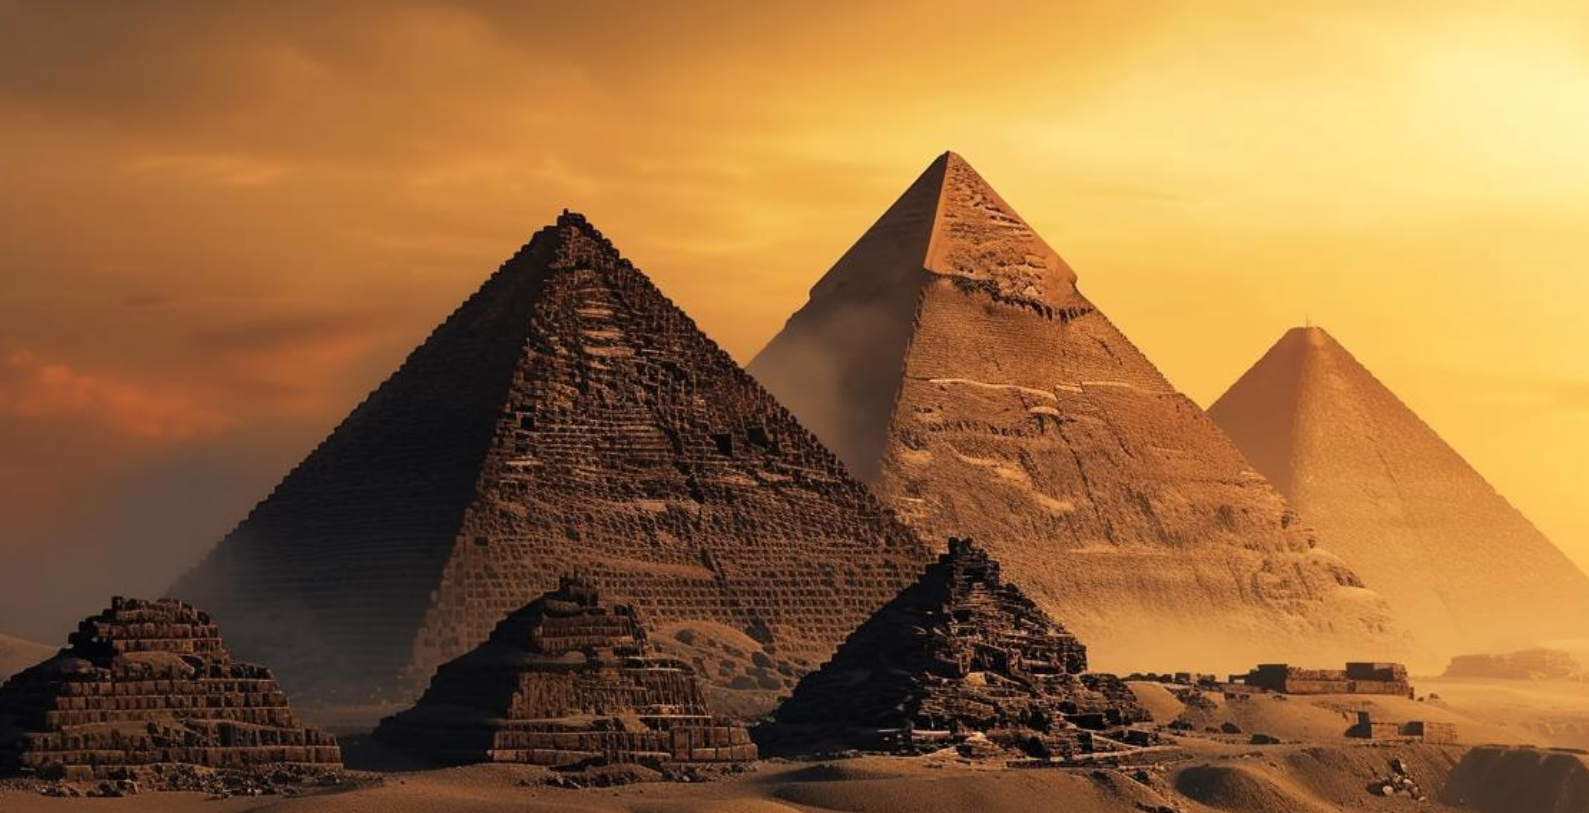 La antigua civilización egipcia: legado cultural y arquitectónico milenario